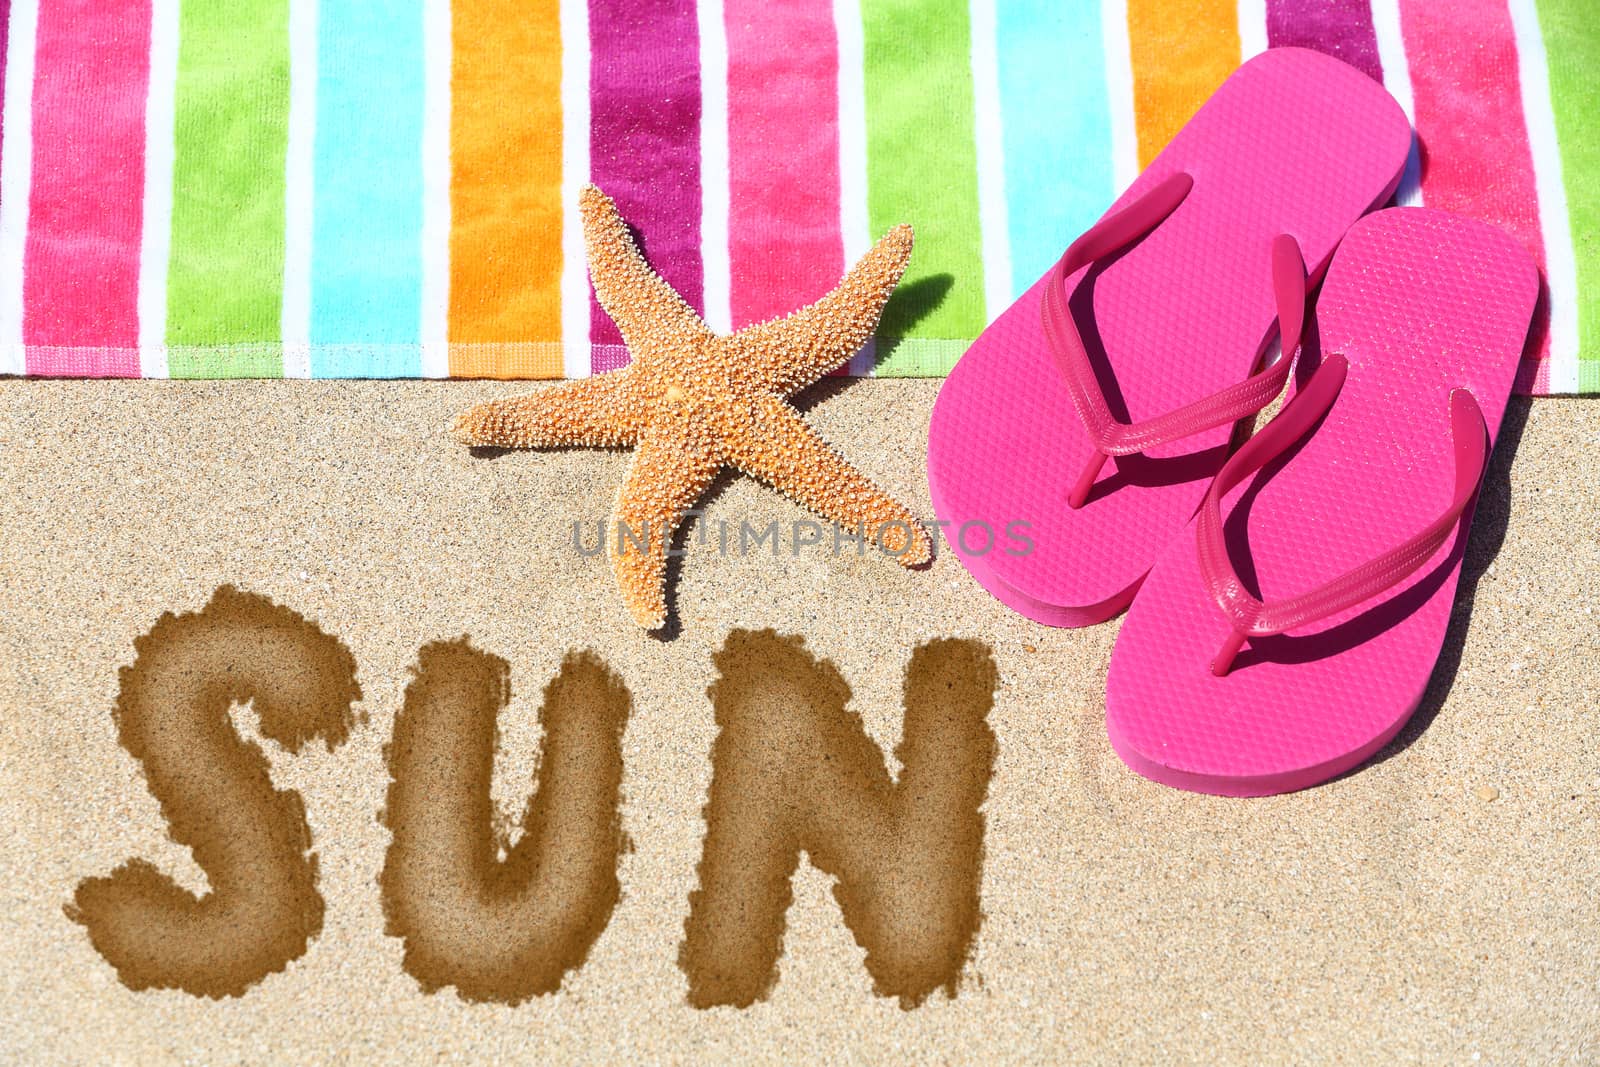 Word - Sun - on a tropical beach by Maridav